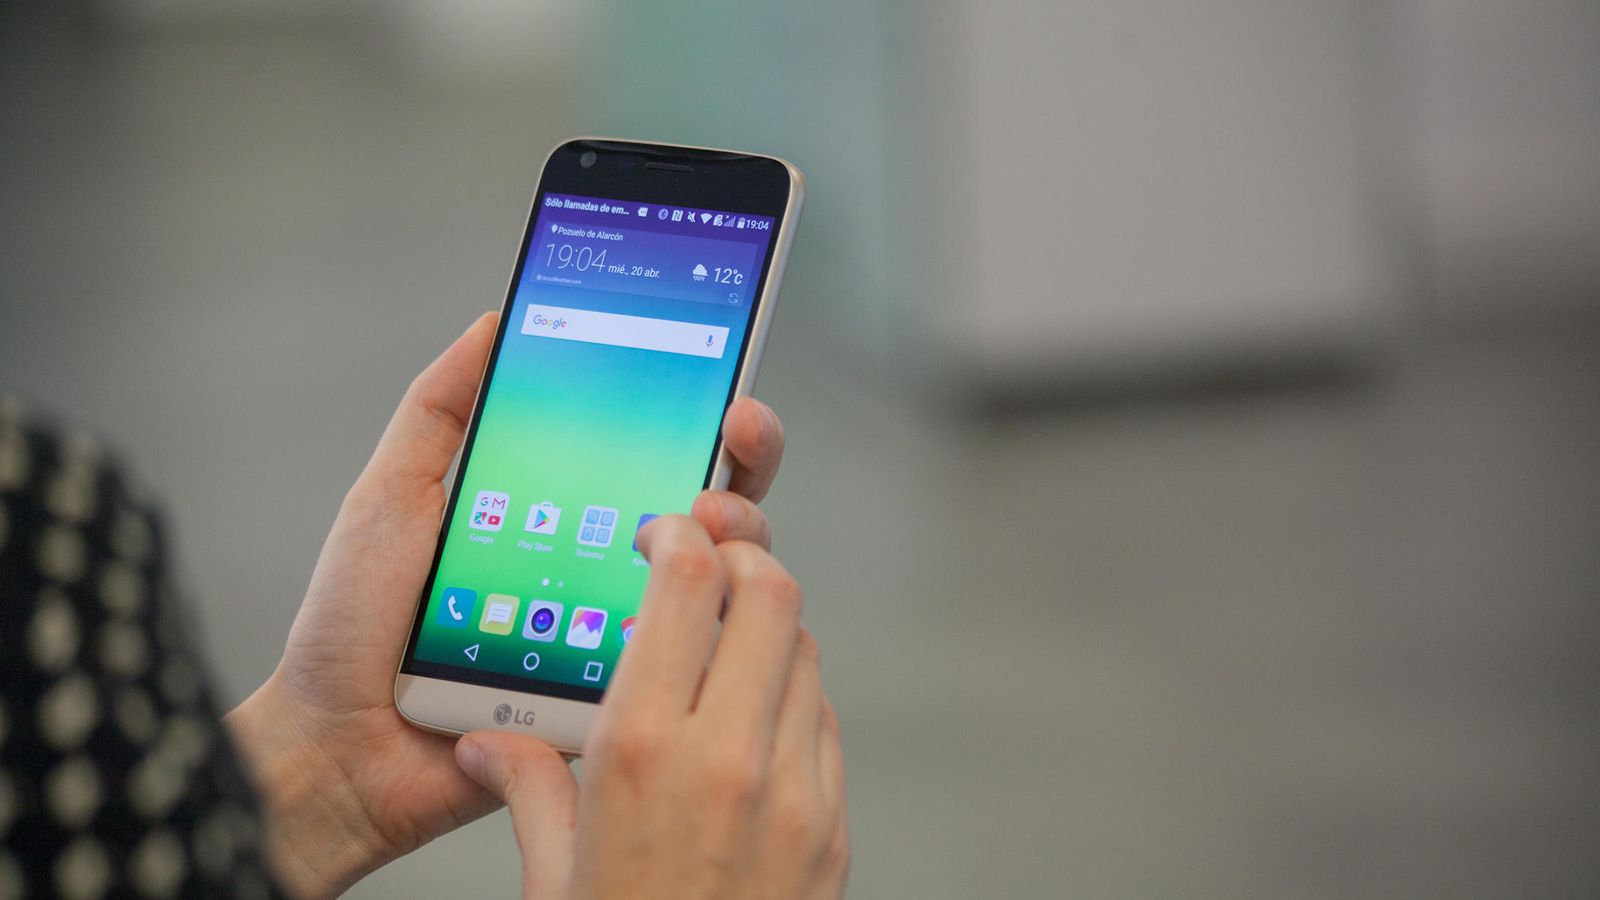 Foto: El LG G5 es un tímido intento por lograr un teléfono modular. (Enrique Villarino)